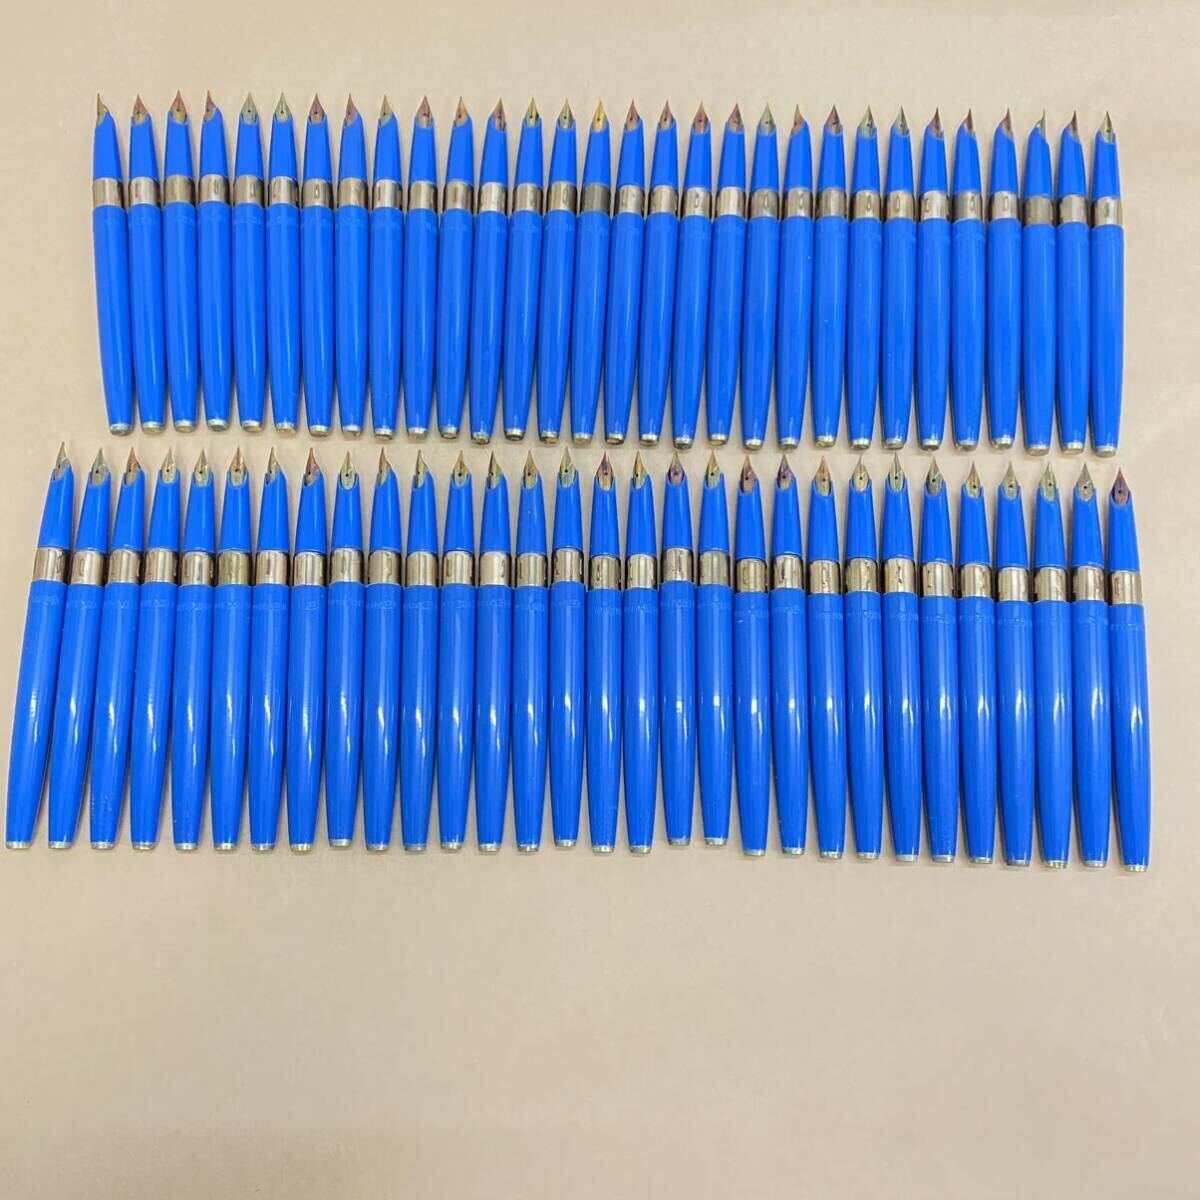 877万年筆 ペン先 ペン芯 コンバーター SUPER WORLD QUEEN PEN 胴軸 青 ブルー 重量約535g 60本セットキャップ欠品 筆記具 筆記用具 の画像1